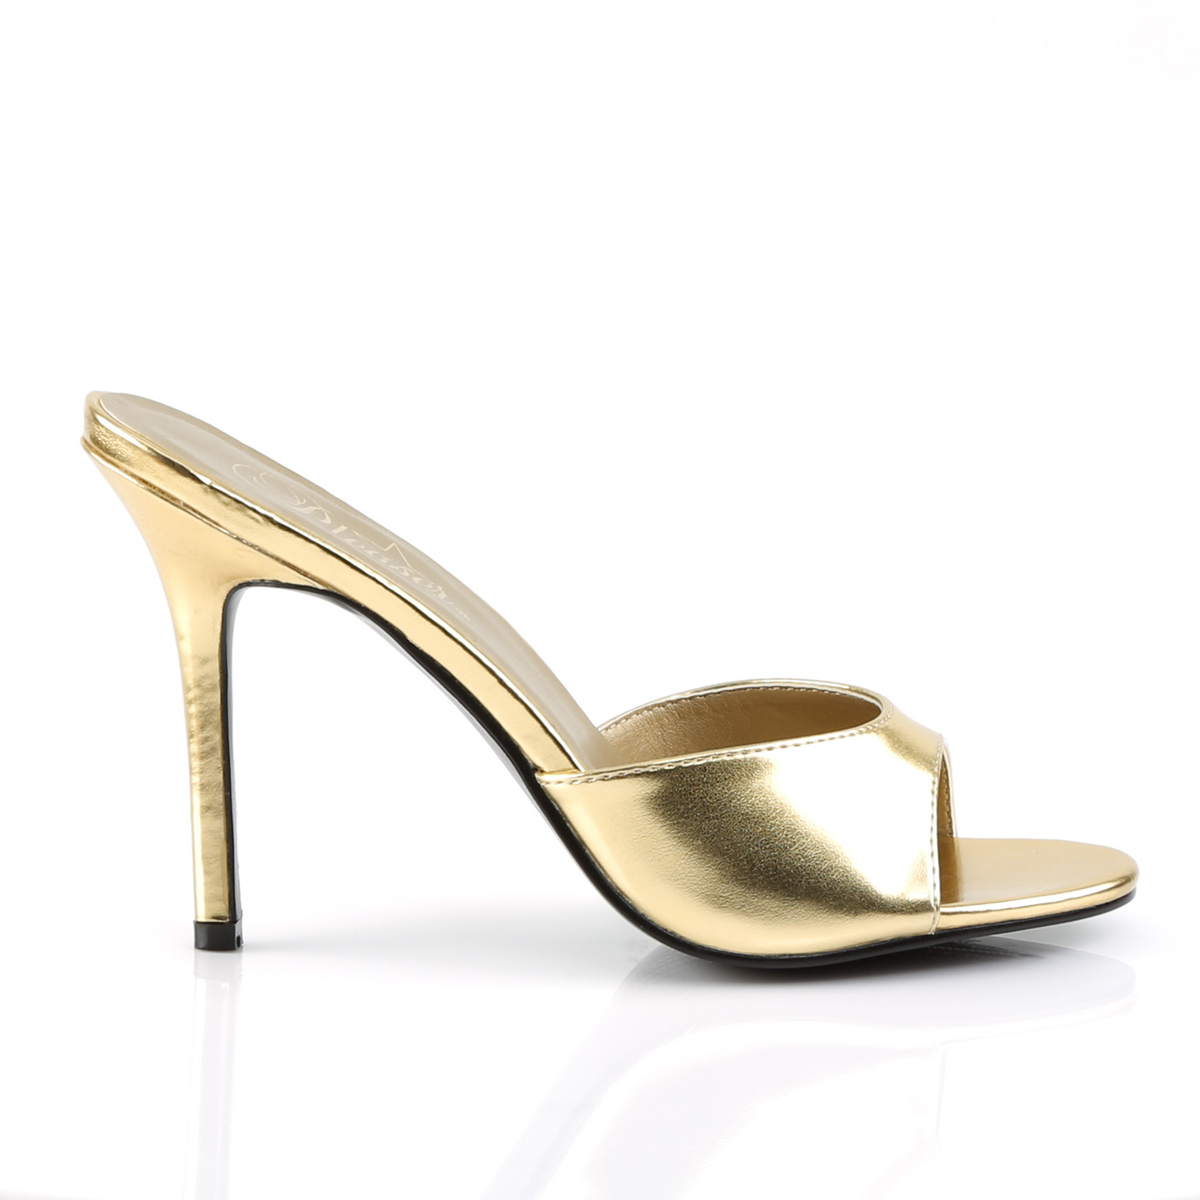 CLASSIQUE-01 Pleaser high heels peep toe slide gold metallic - Schuh ...